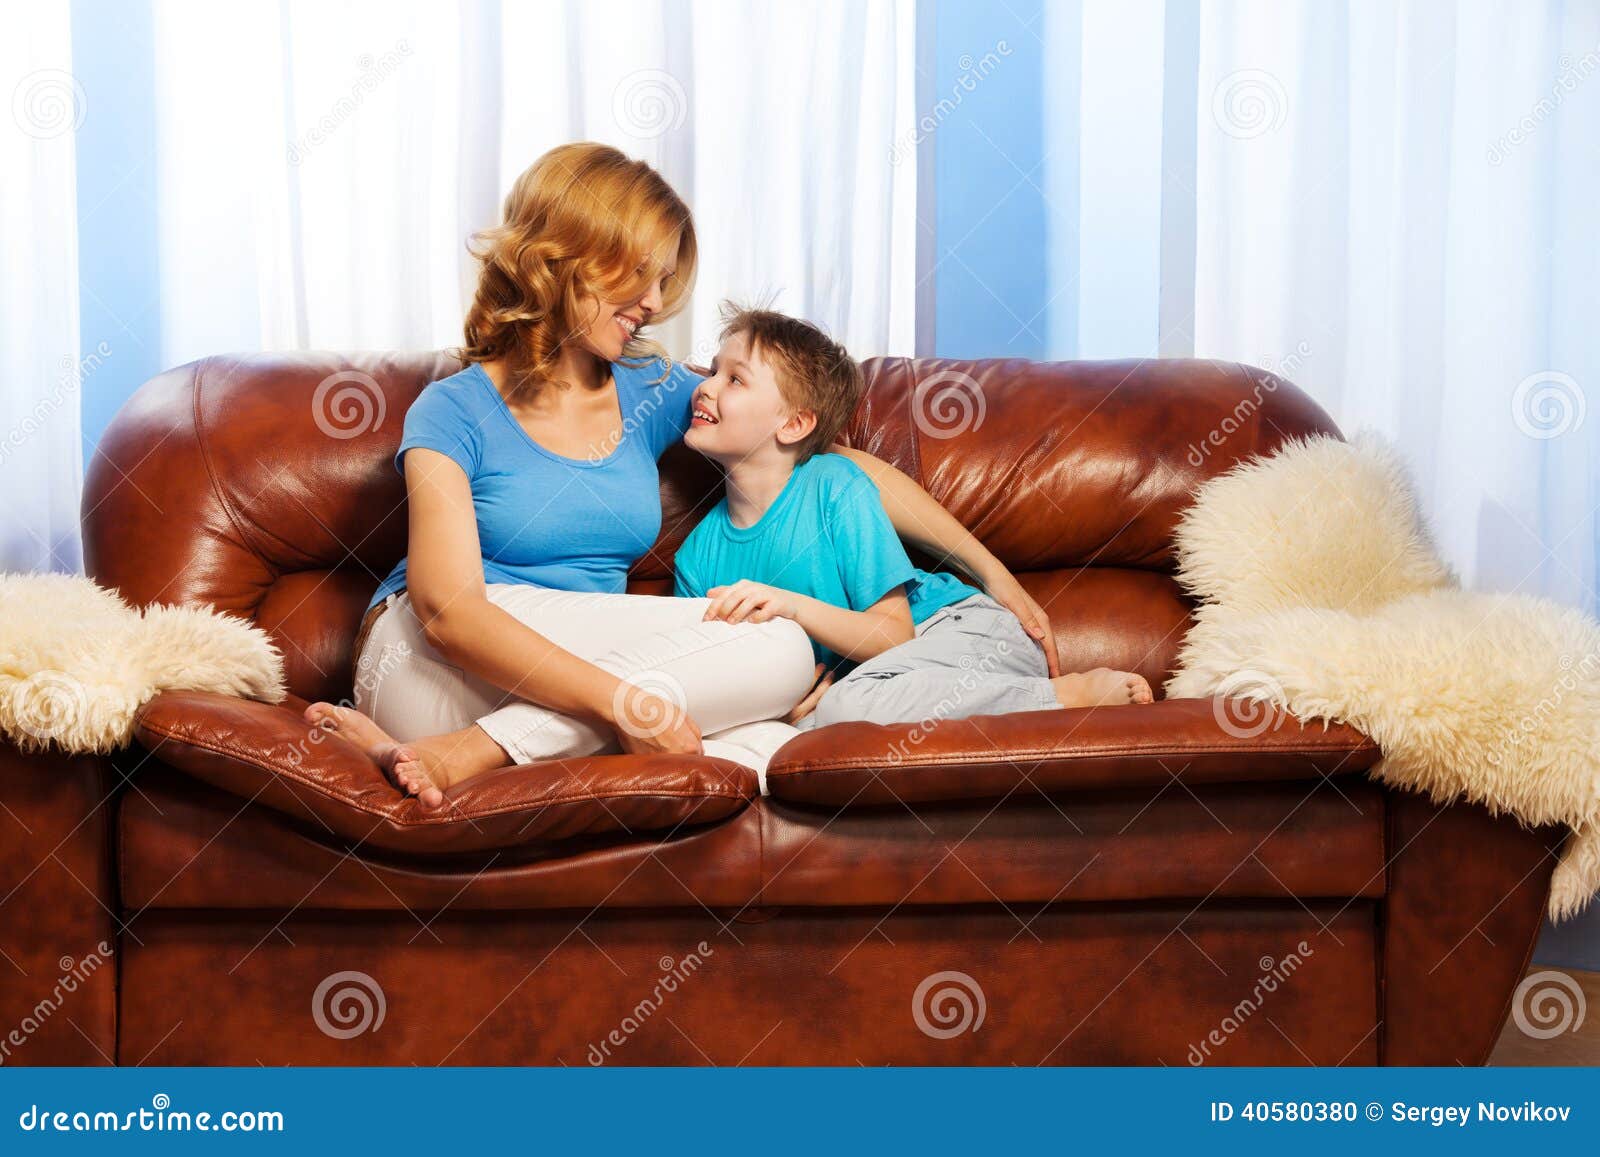 Мама друга на диване. Мама с ребенком на диване. Мама с ребенком сидит на диване. Фотосессия ребенка и мамы на диване.